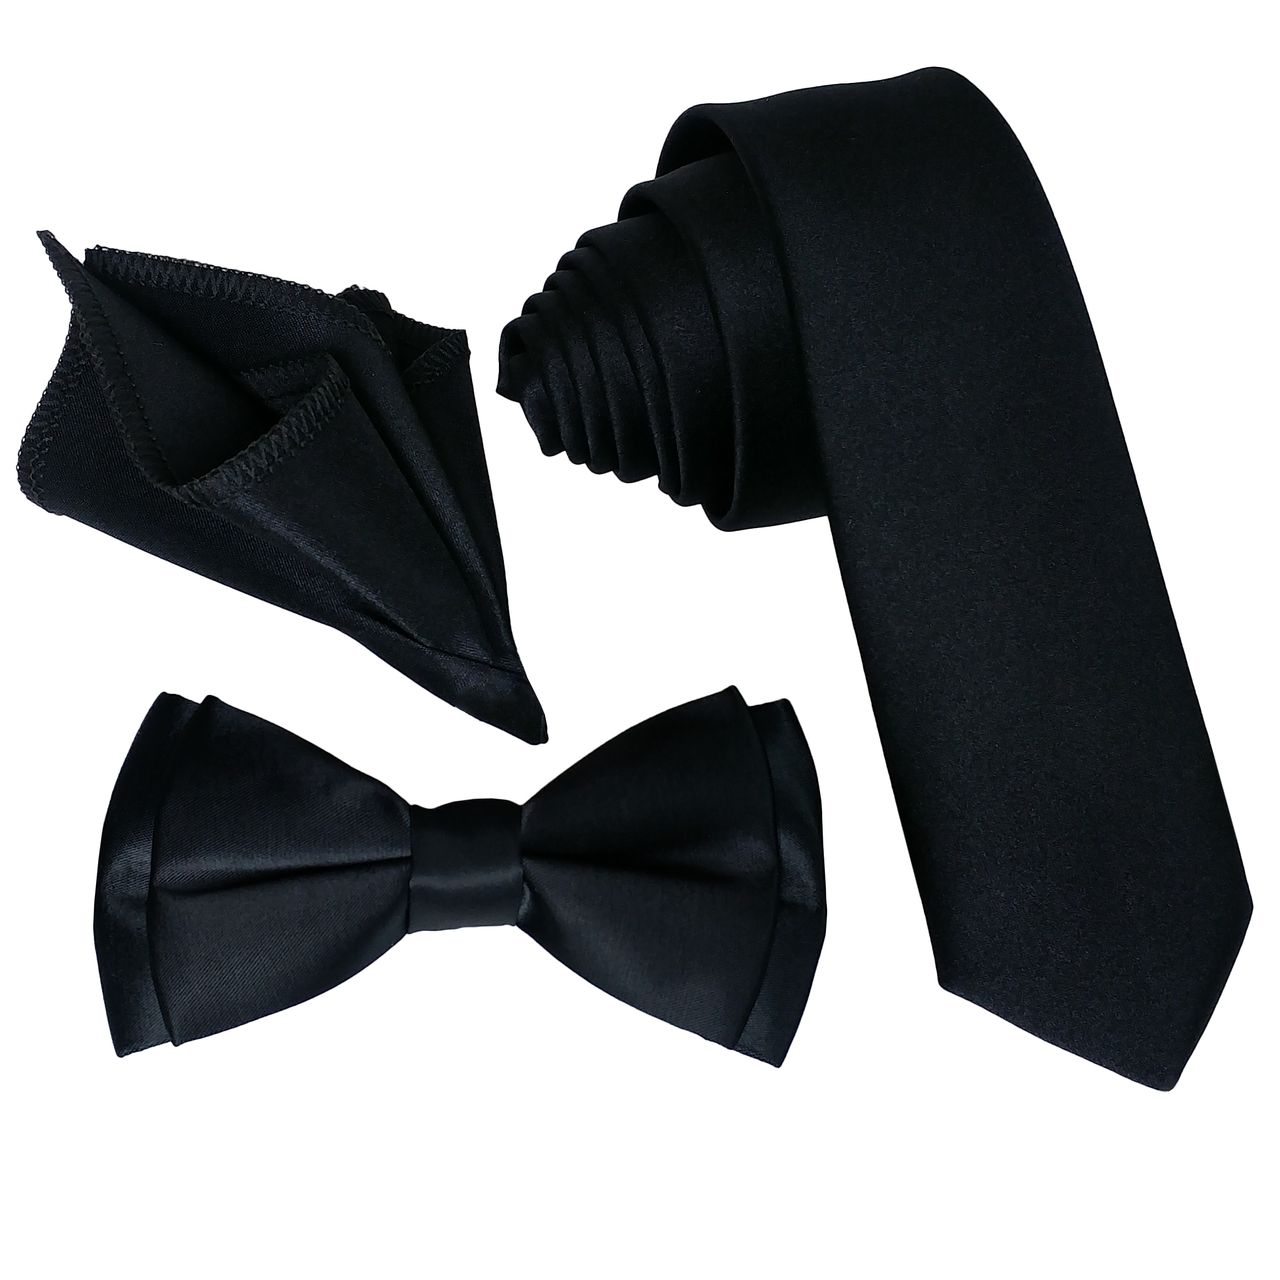 ست کراوات و پاپیون و دستمال جیب مردانه کد B3